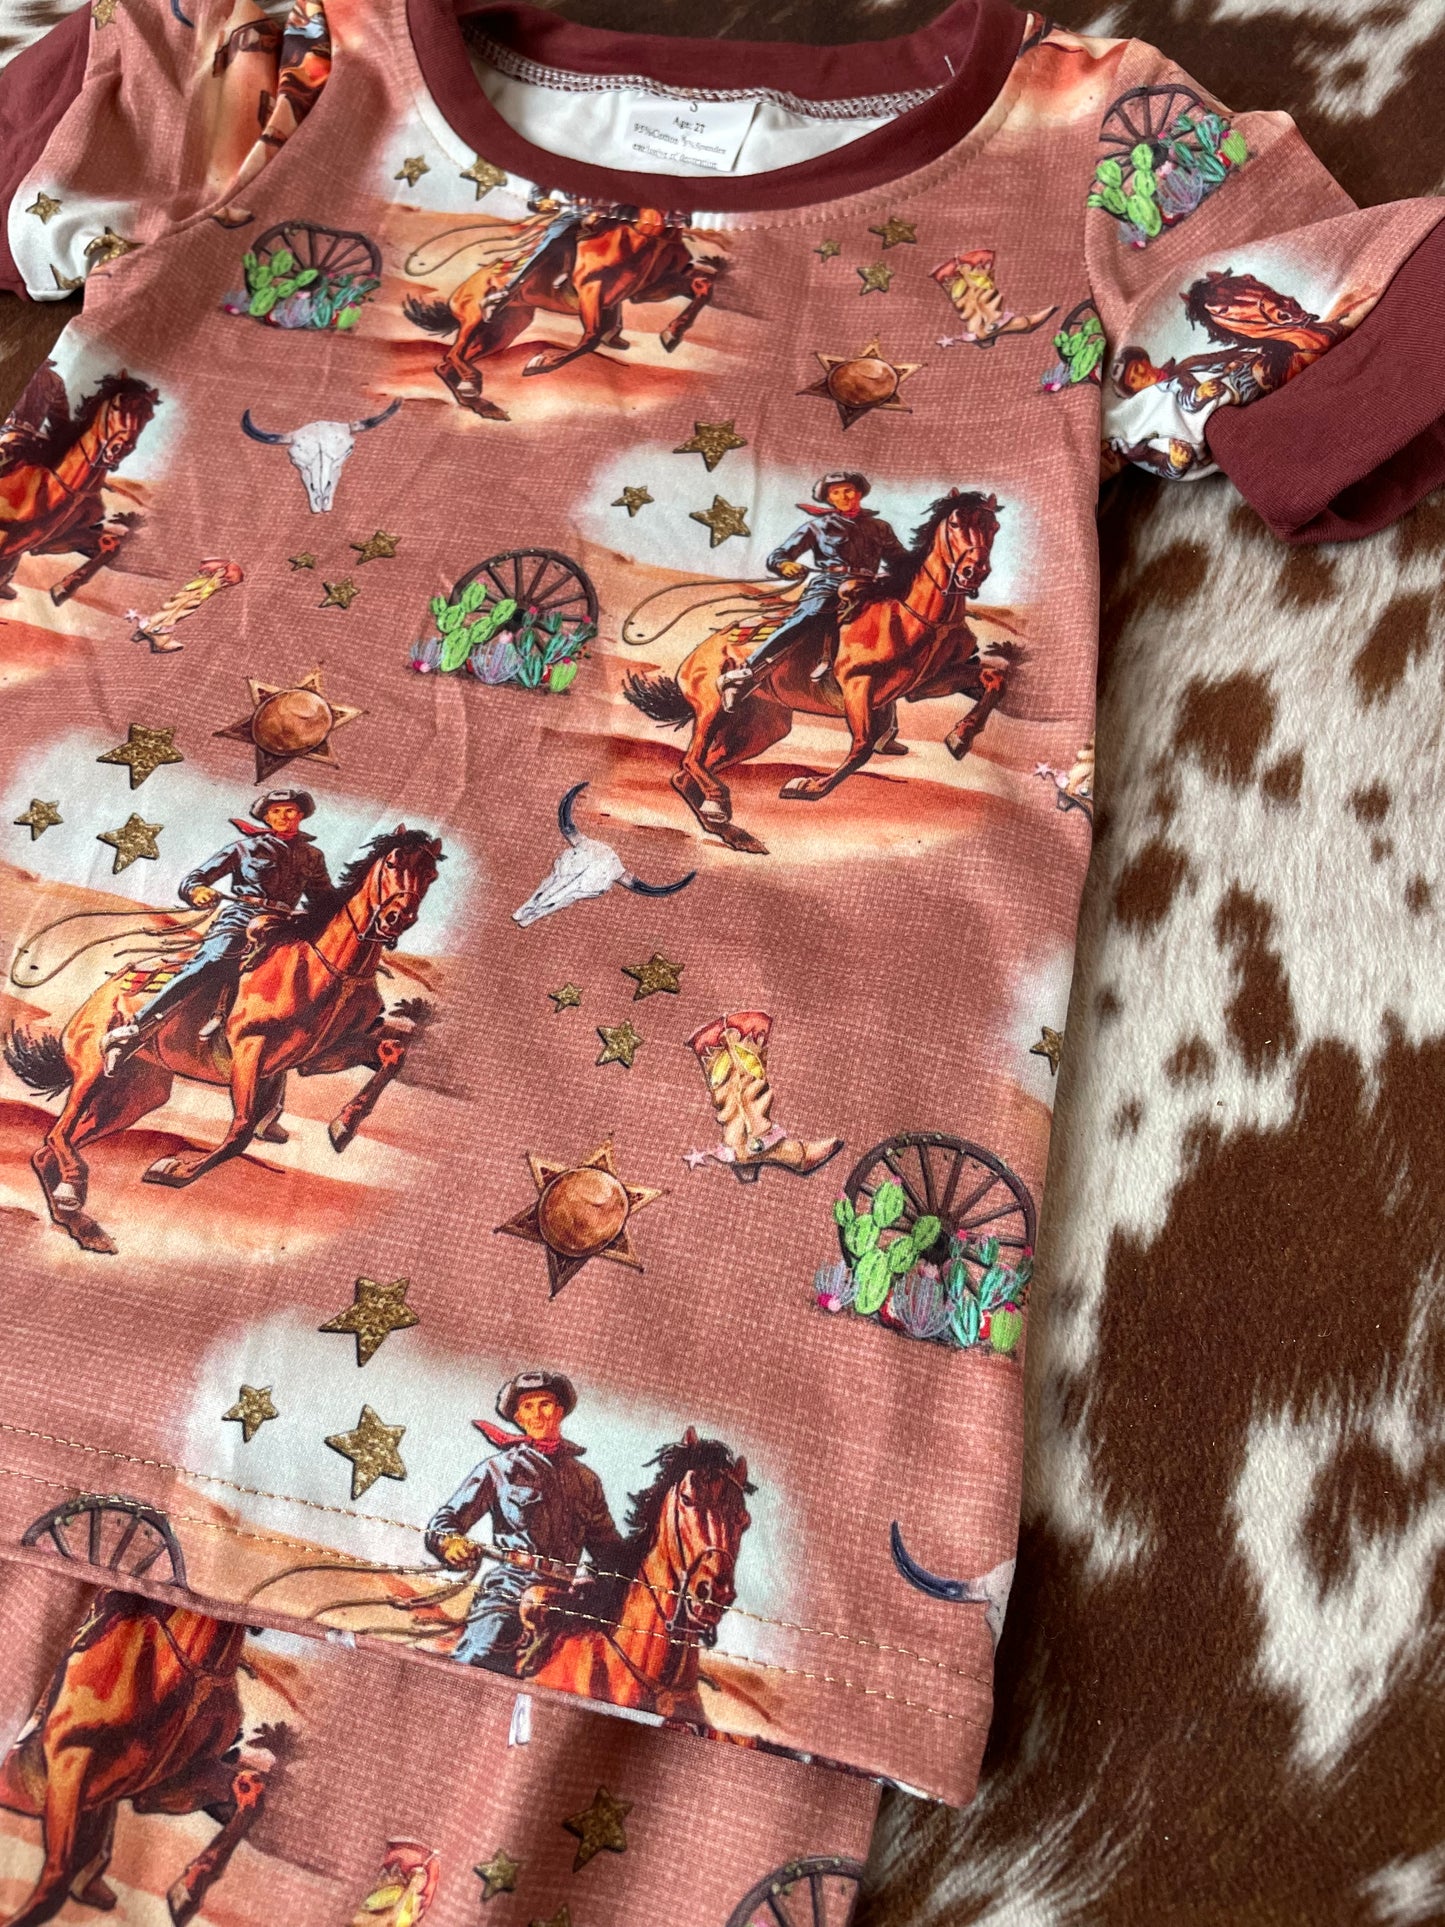 Rodeo Pjs!!! Cowboy pajamas